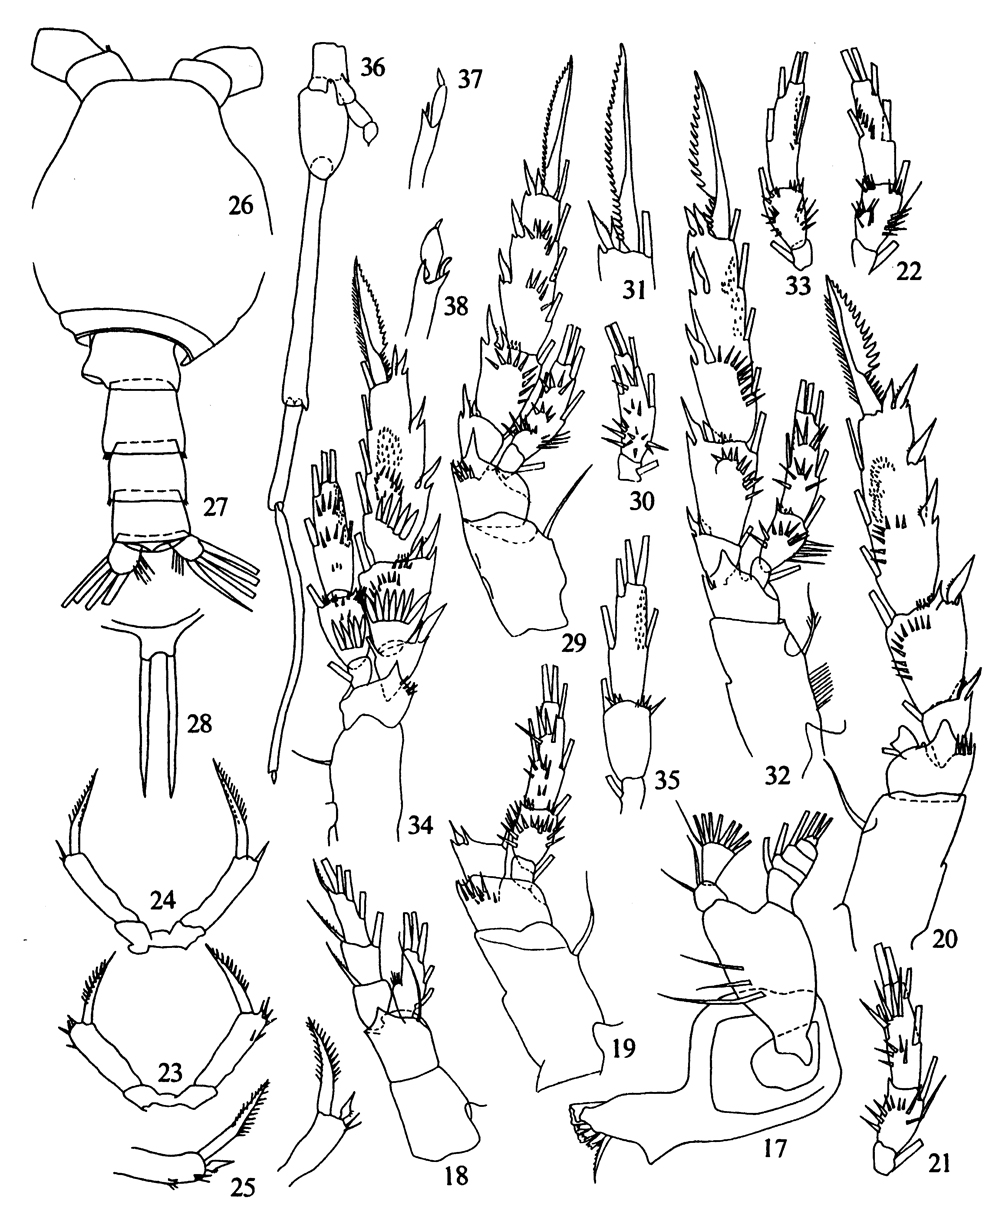 Espce Scolecitrichopsis tenuipes - Planche 6 de figures morphologiques